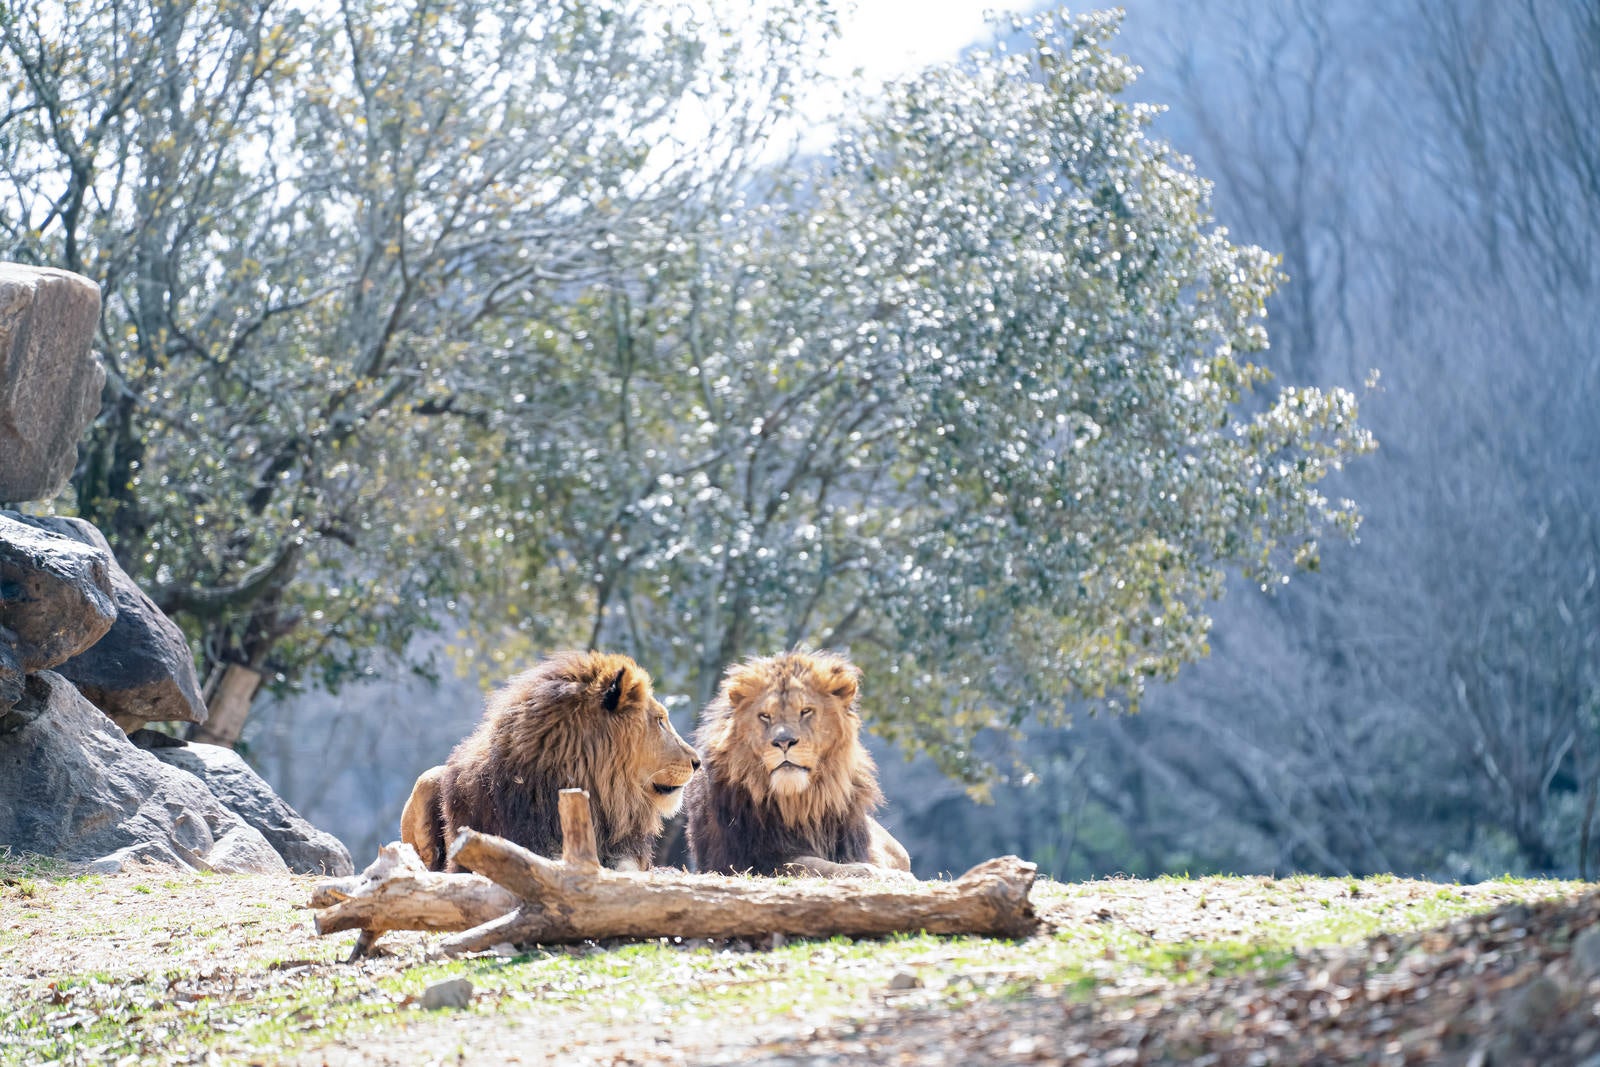 「ひなたぼっこをする仲良しなライオン」の写真